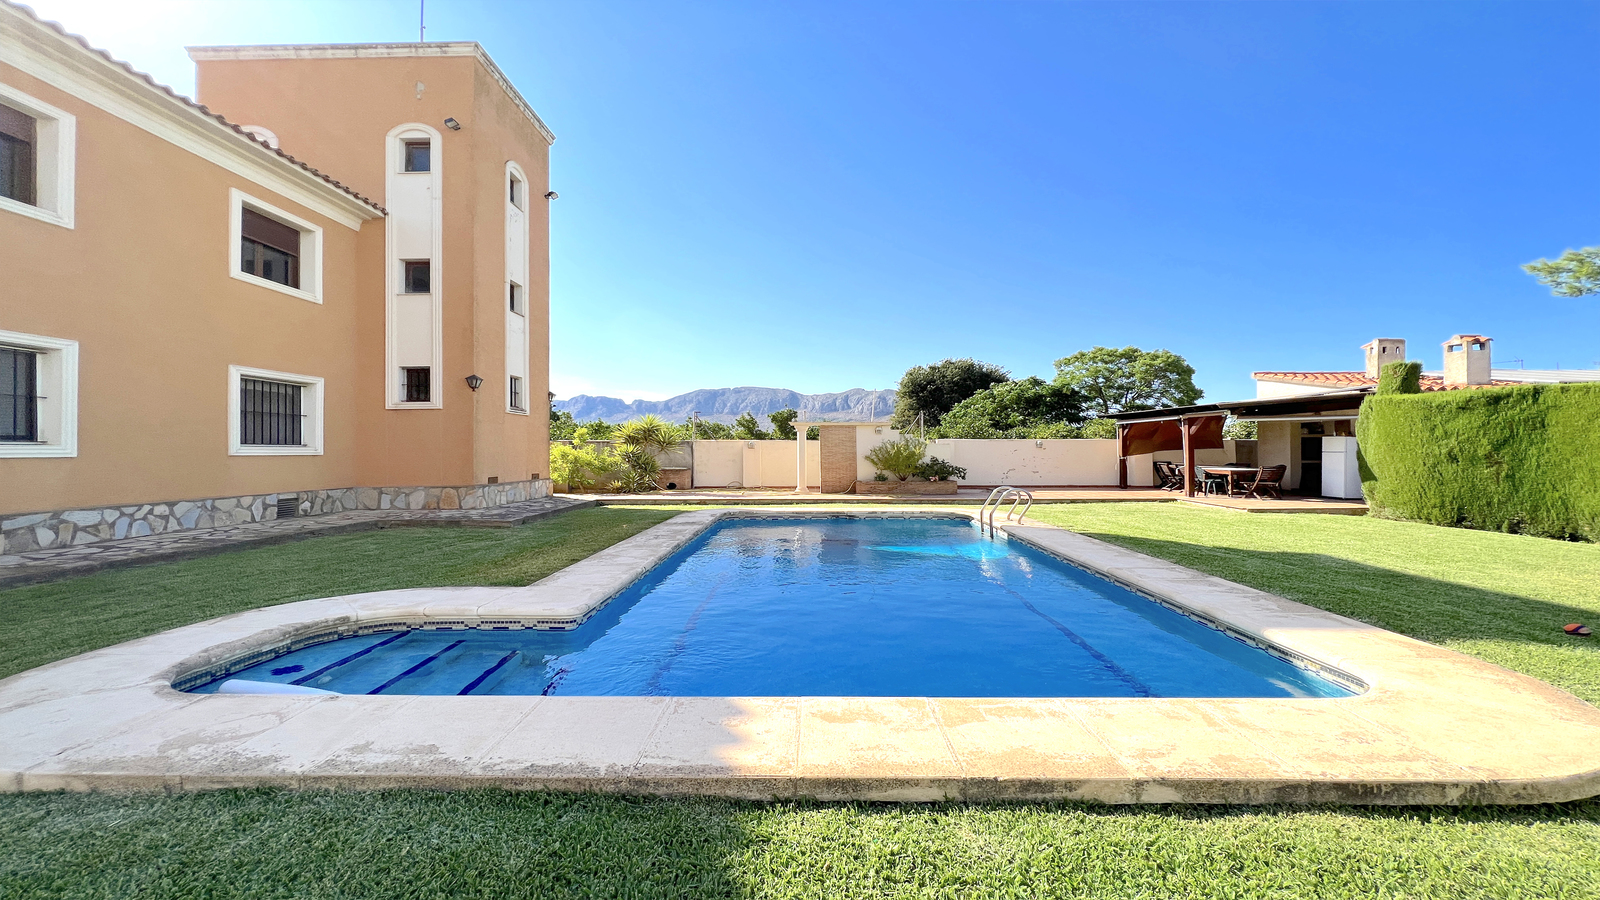 Villa 4 chambres avec XXL grande terrasse ensoleillée, grande piscine, maison BBQ avec une cuisine d'été, jardin avec arbres fruitiers